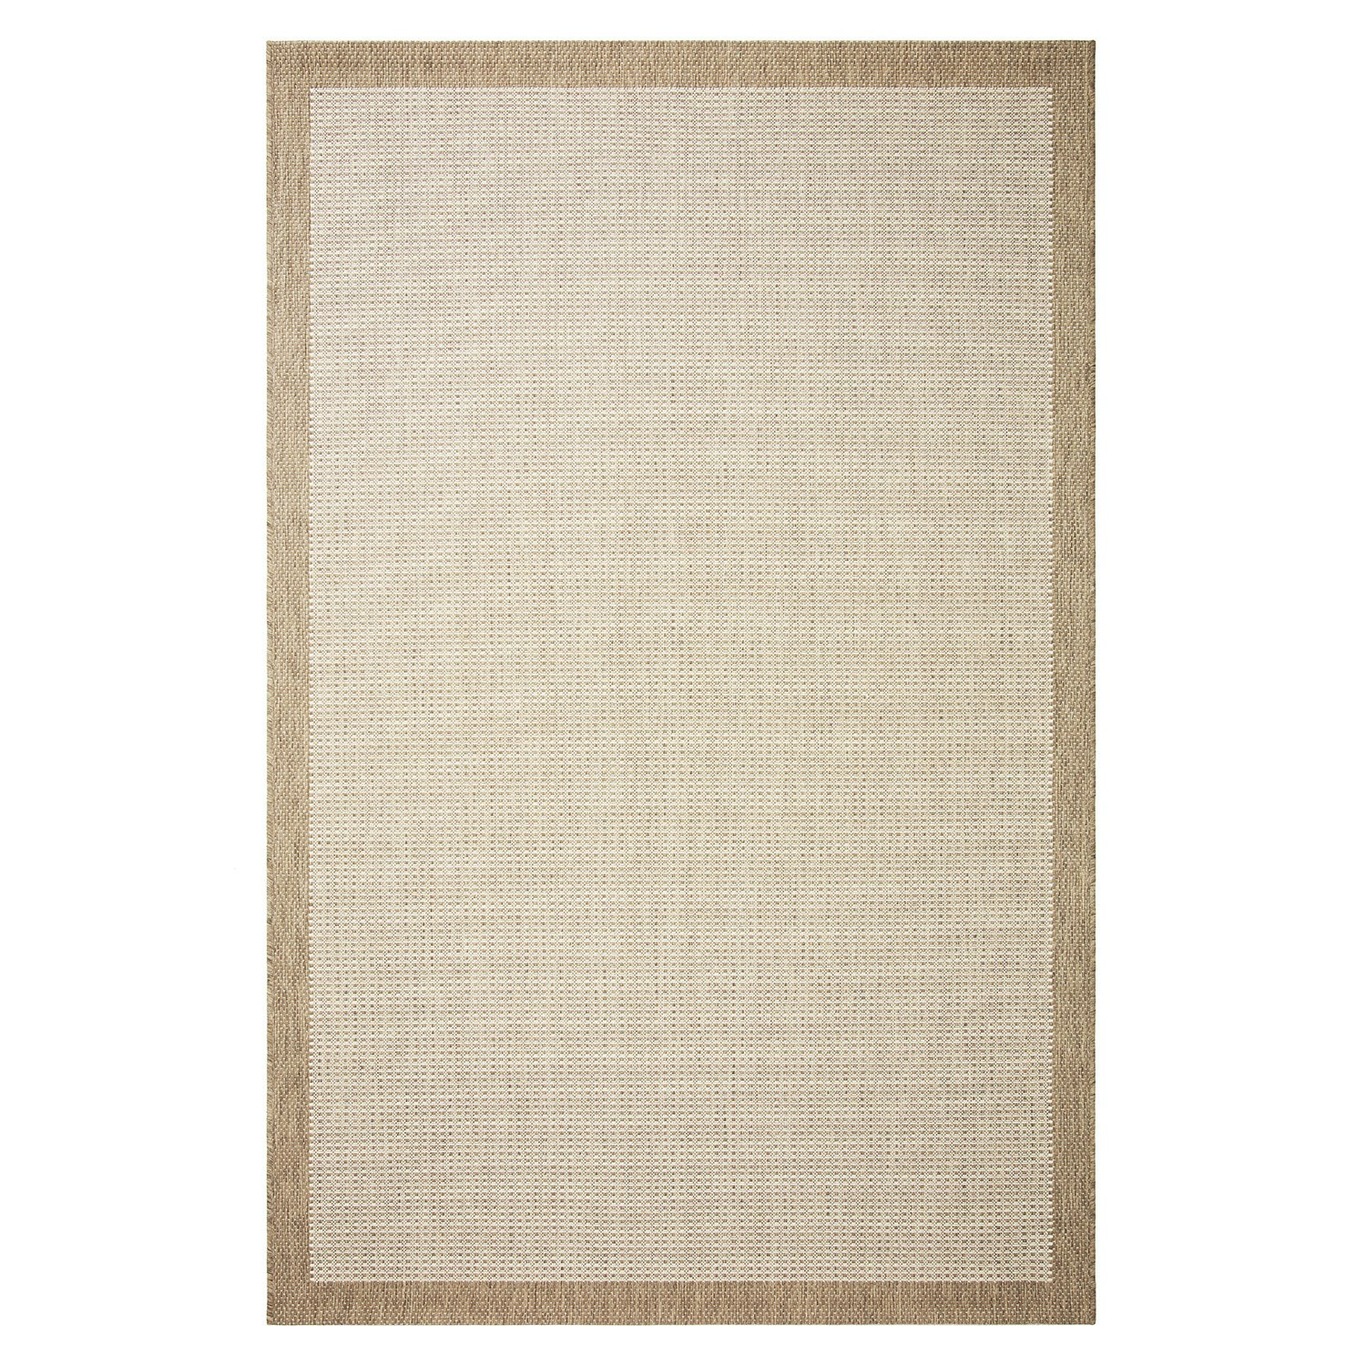 Bahar Outdoor Rug Beige/Off-white, 200x300 cm